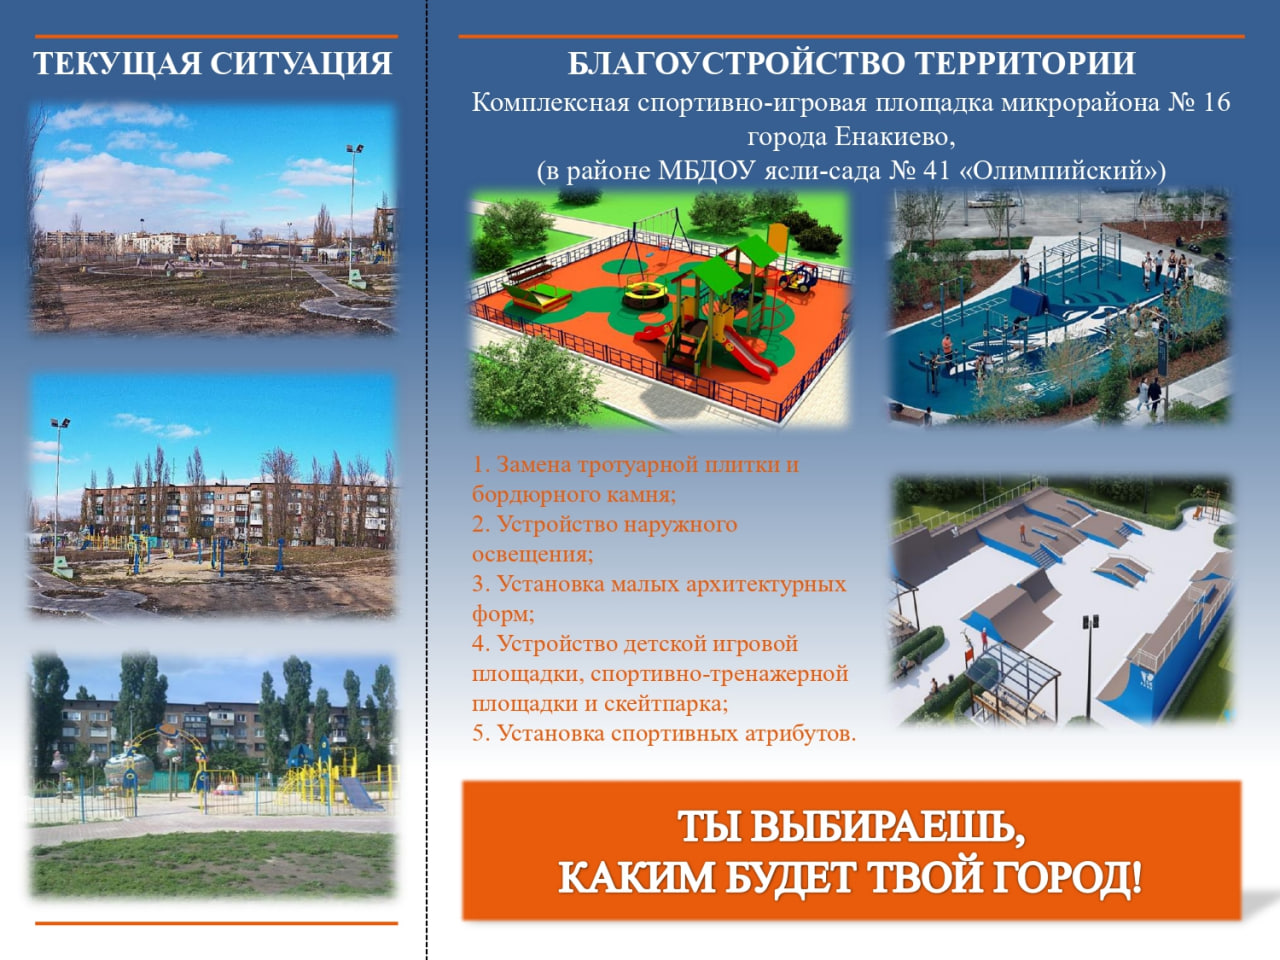 Городской округ Енакиево принимает участие в федеральном проекте «Формирование комфортной городской среды».